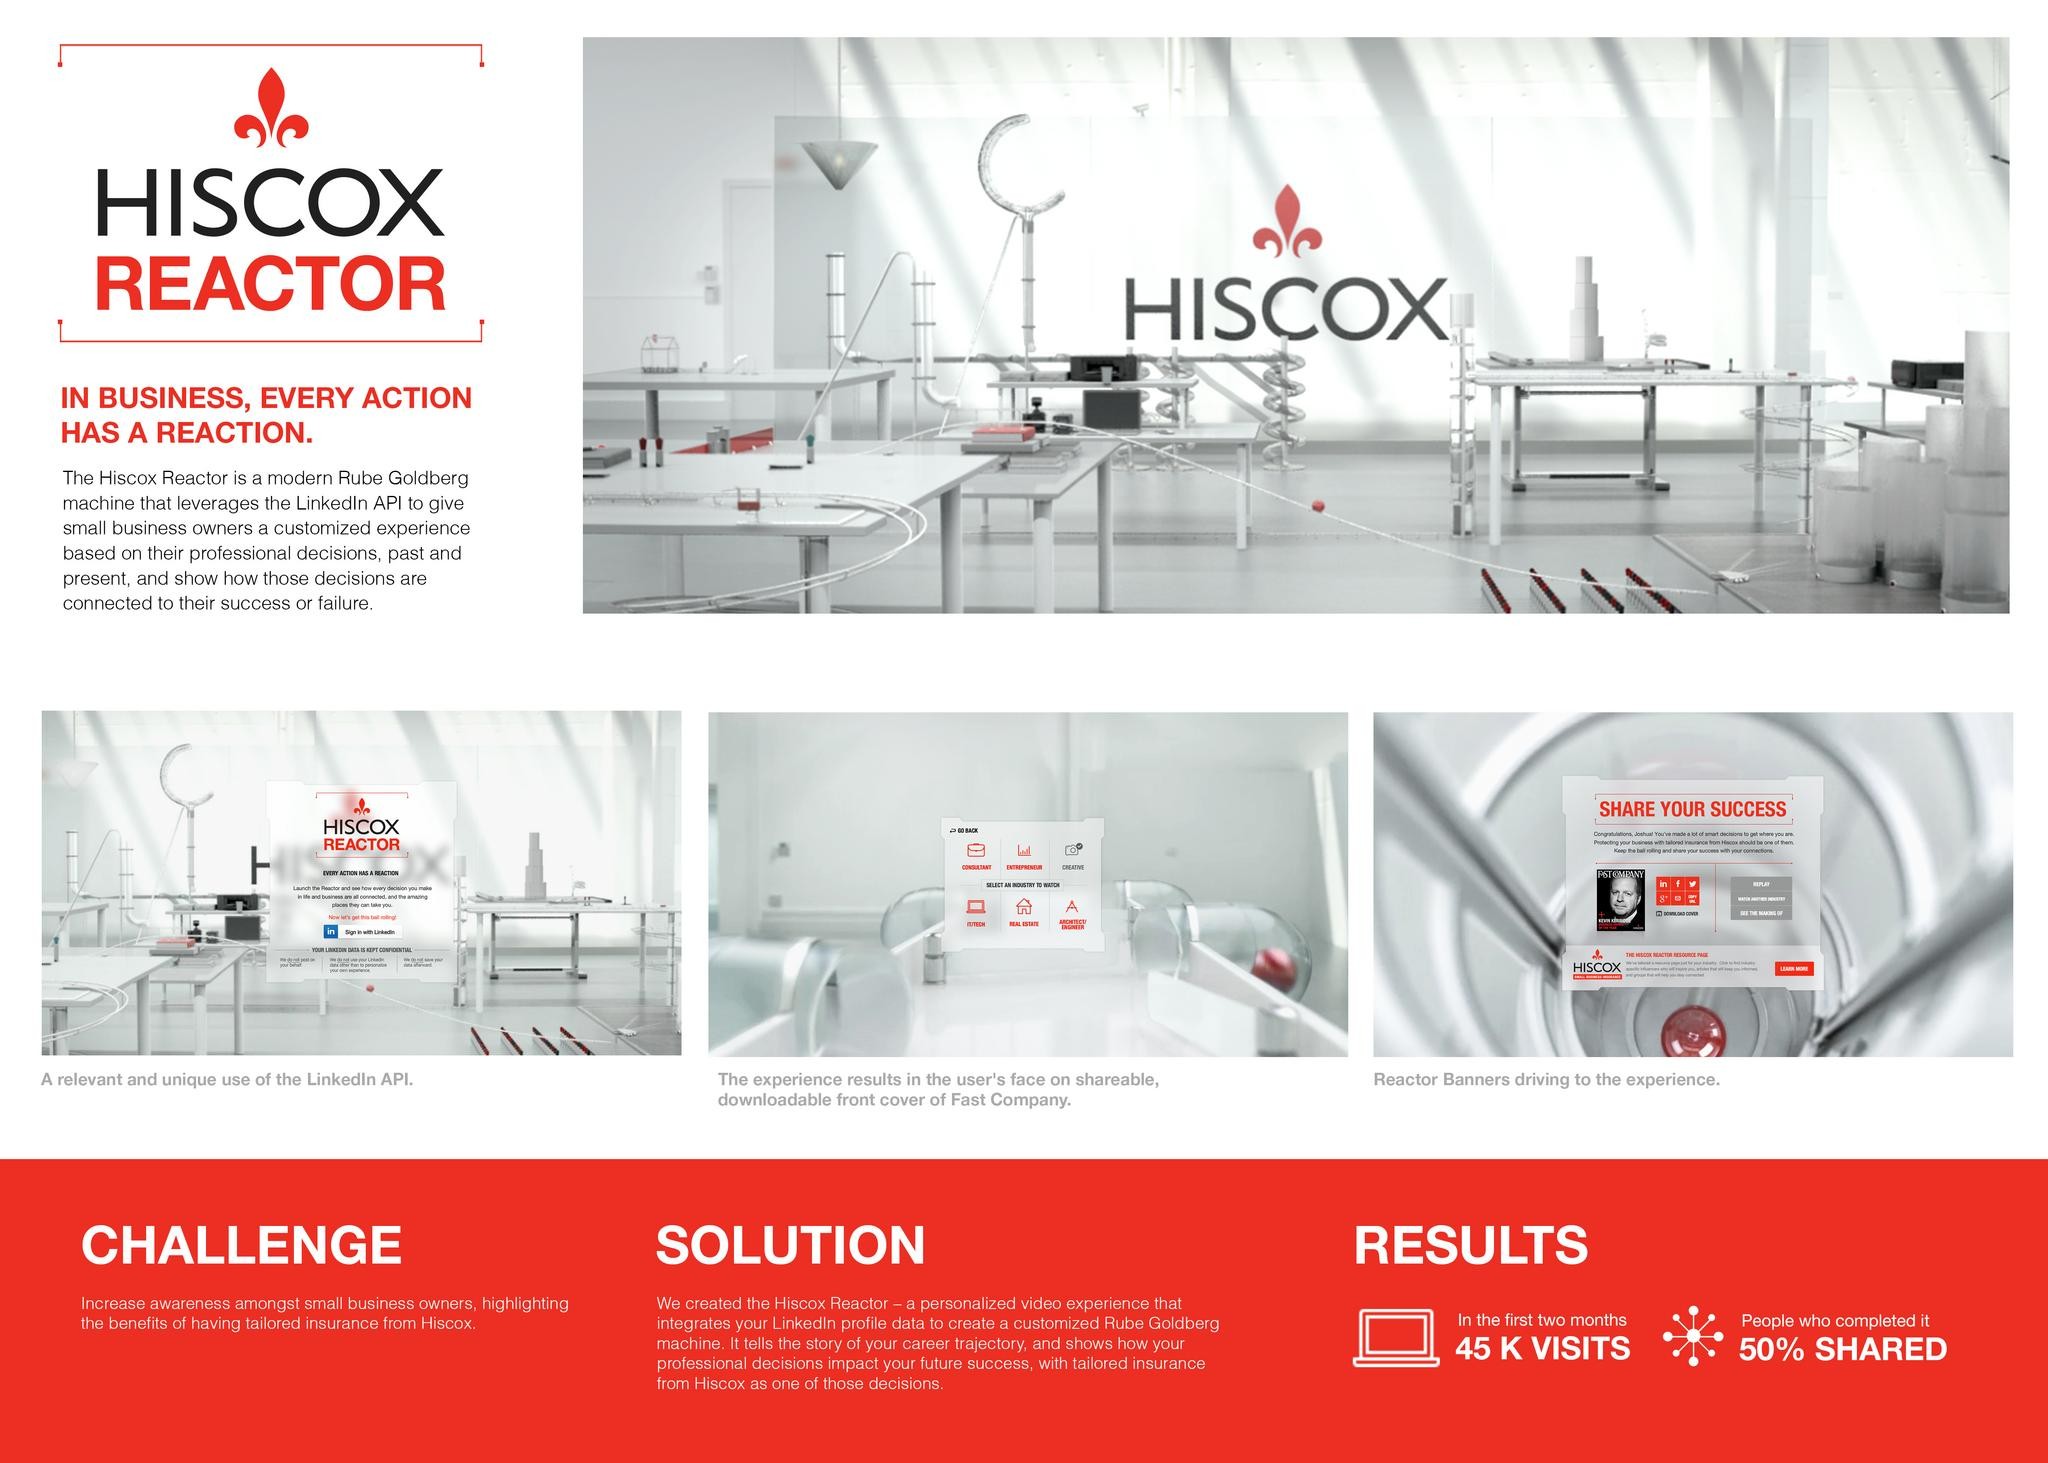 THE HISCOX REACTOR